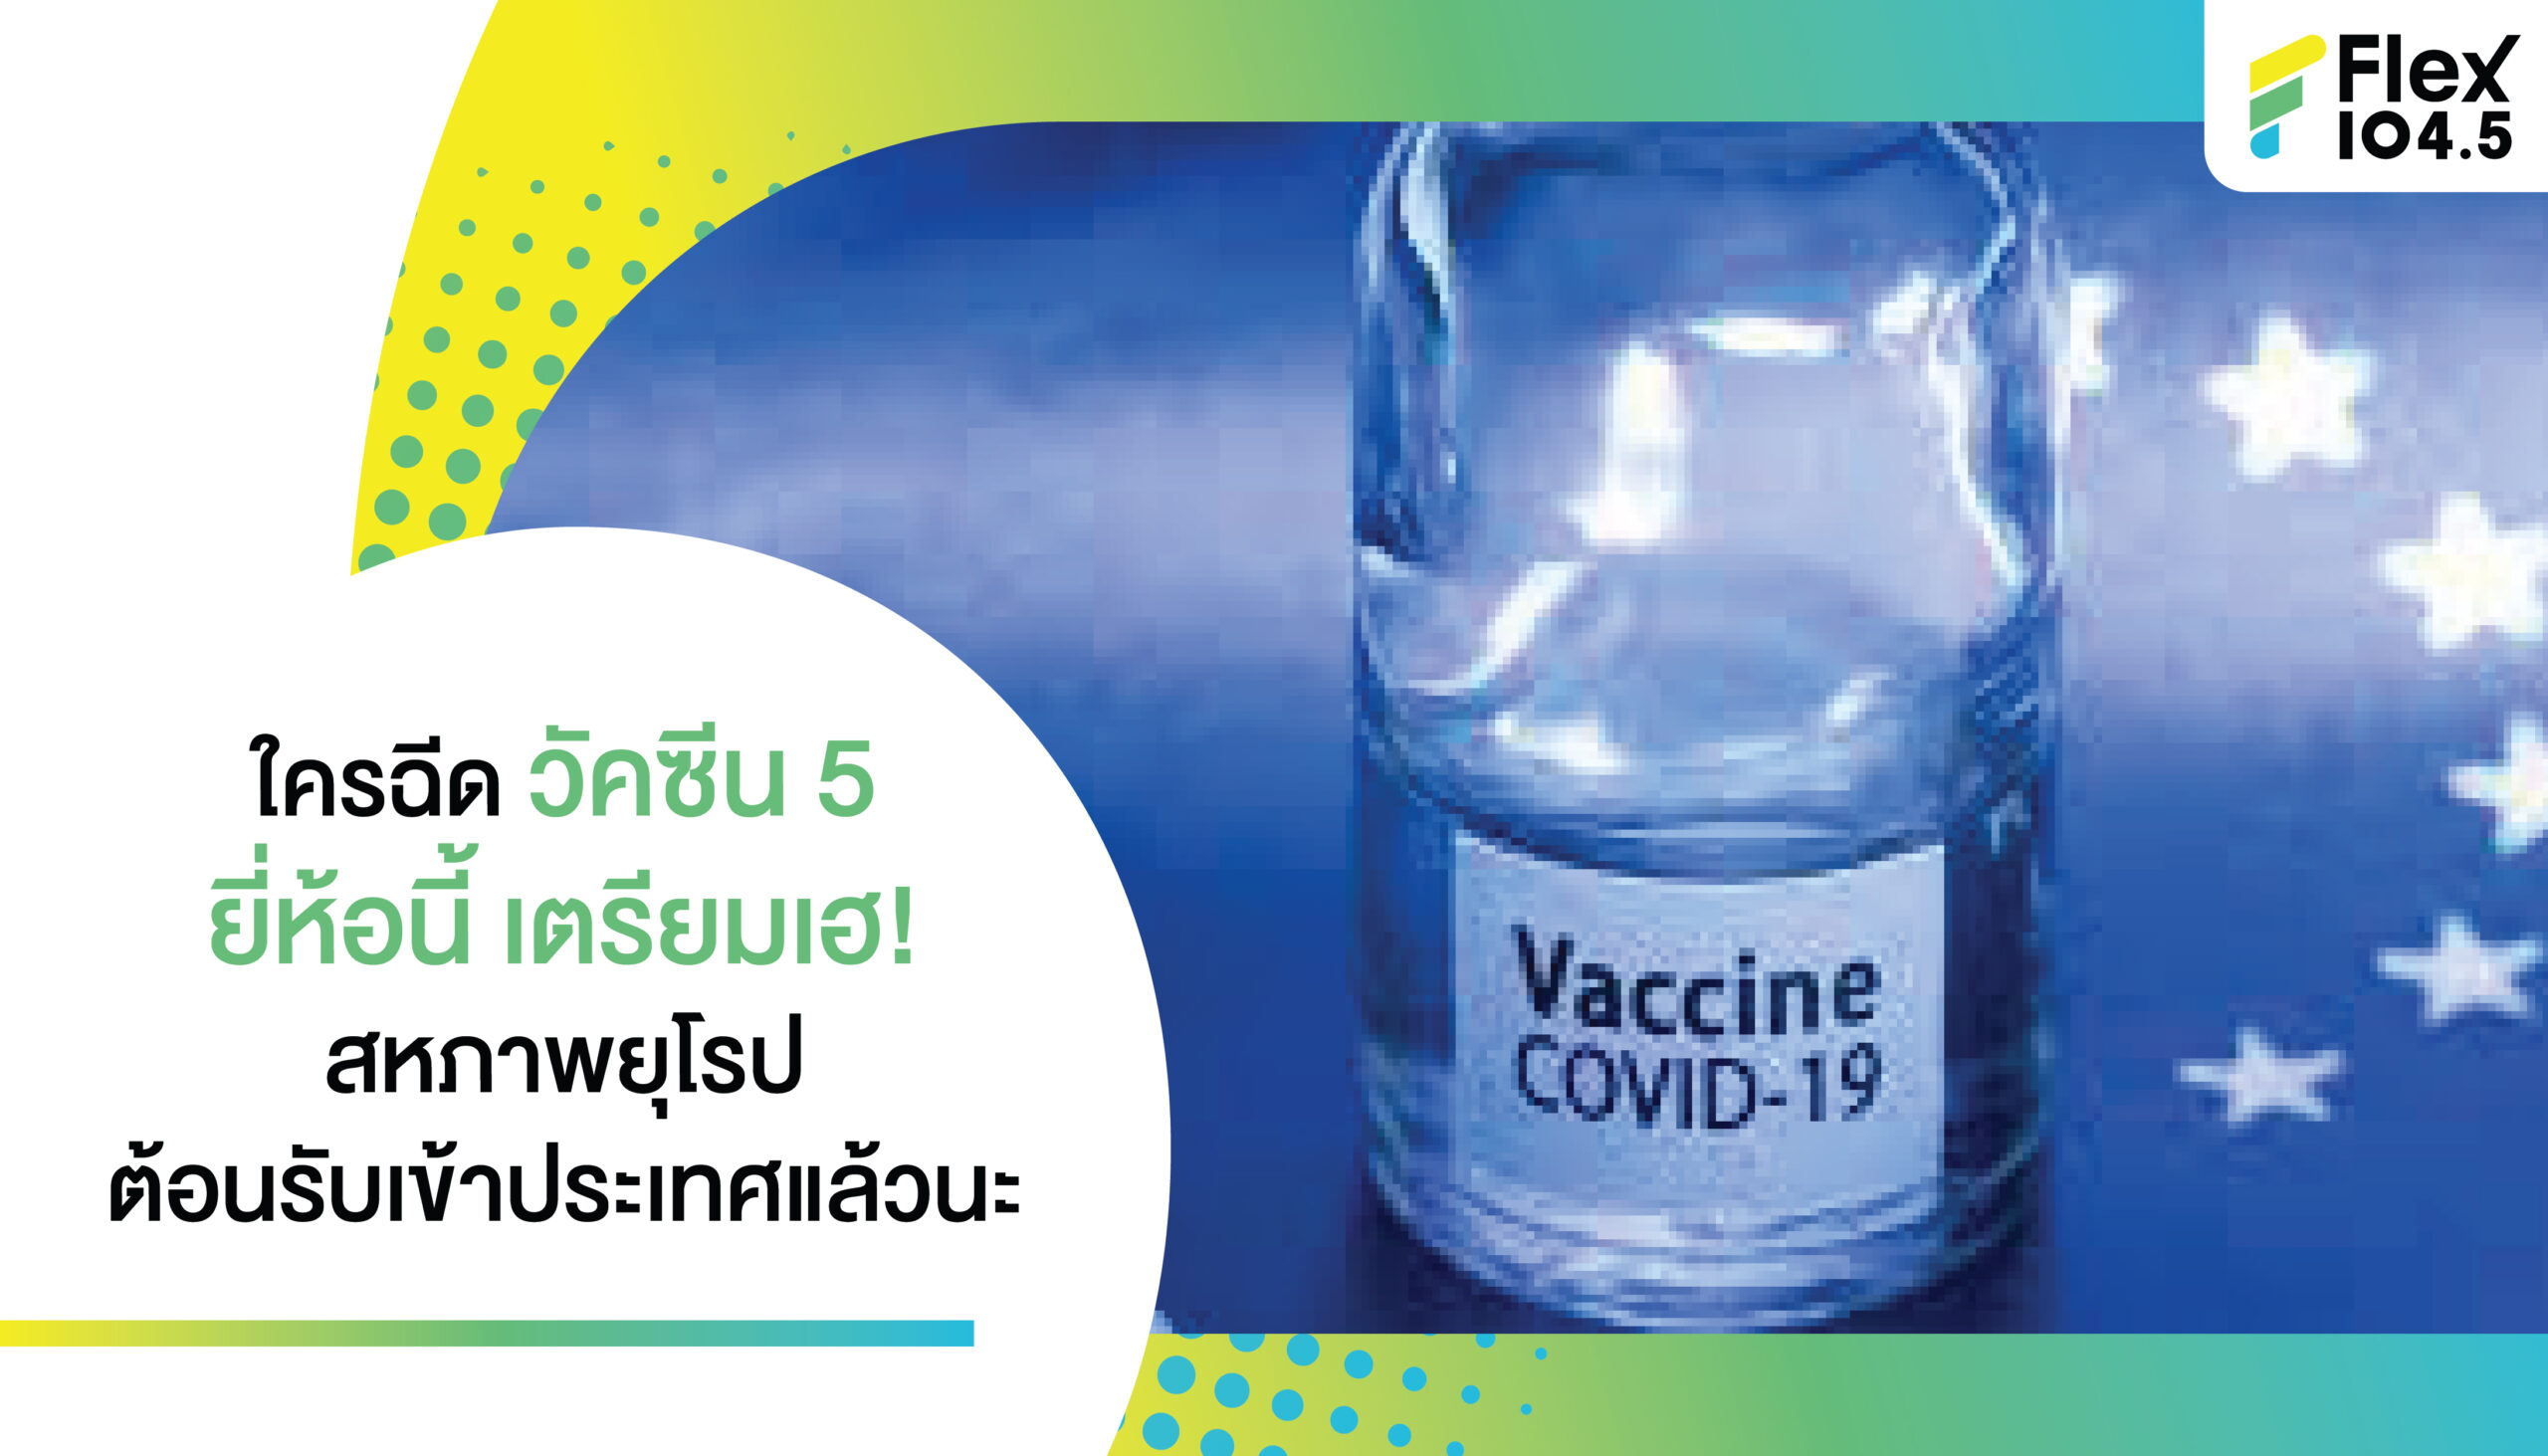 Vaccine Covid 19